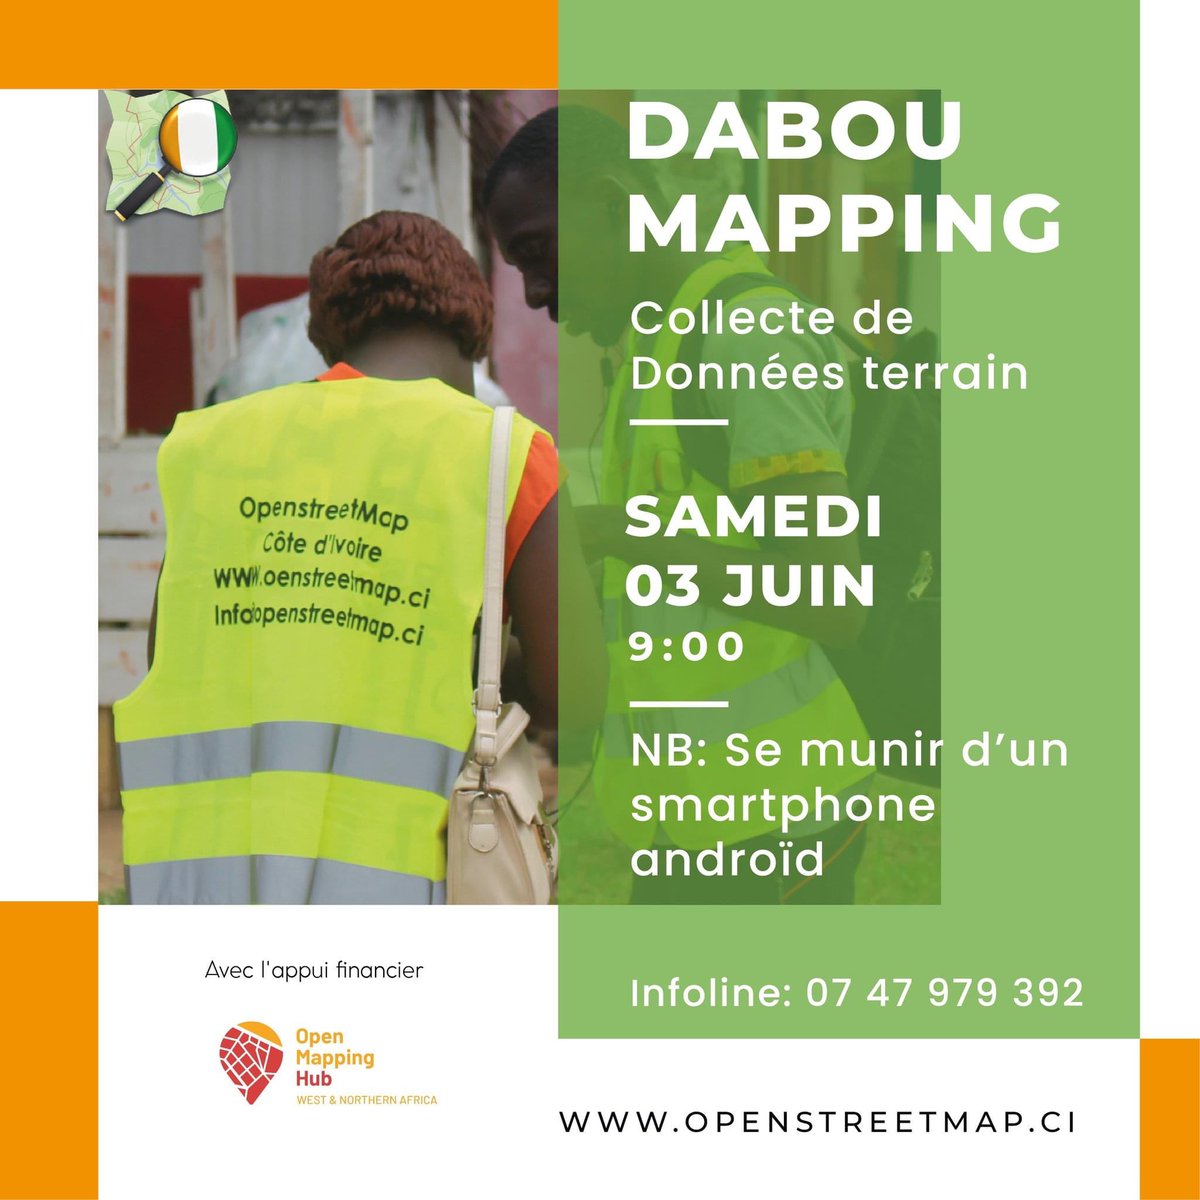 🌍 La communauté @OSMCI est fier de vous annoncer une initiative passionnante dans le cadre du programme MWALAI ! En partenariat avec Open Mapping Hub - West Africa(#WNAH), nous organisons une collecte de données sur le terrain dans la belle ville de Dabou. #mwalaigrant #osm